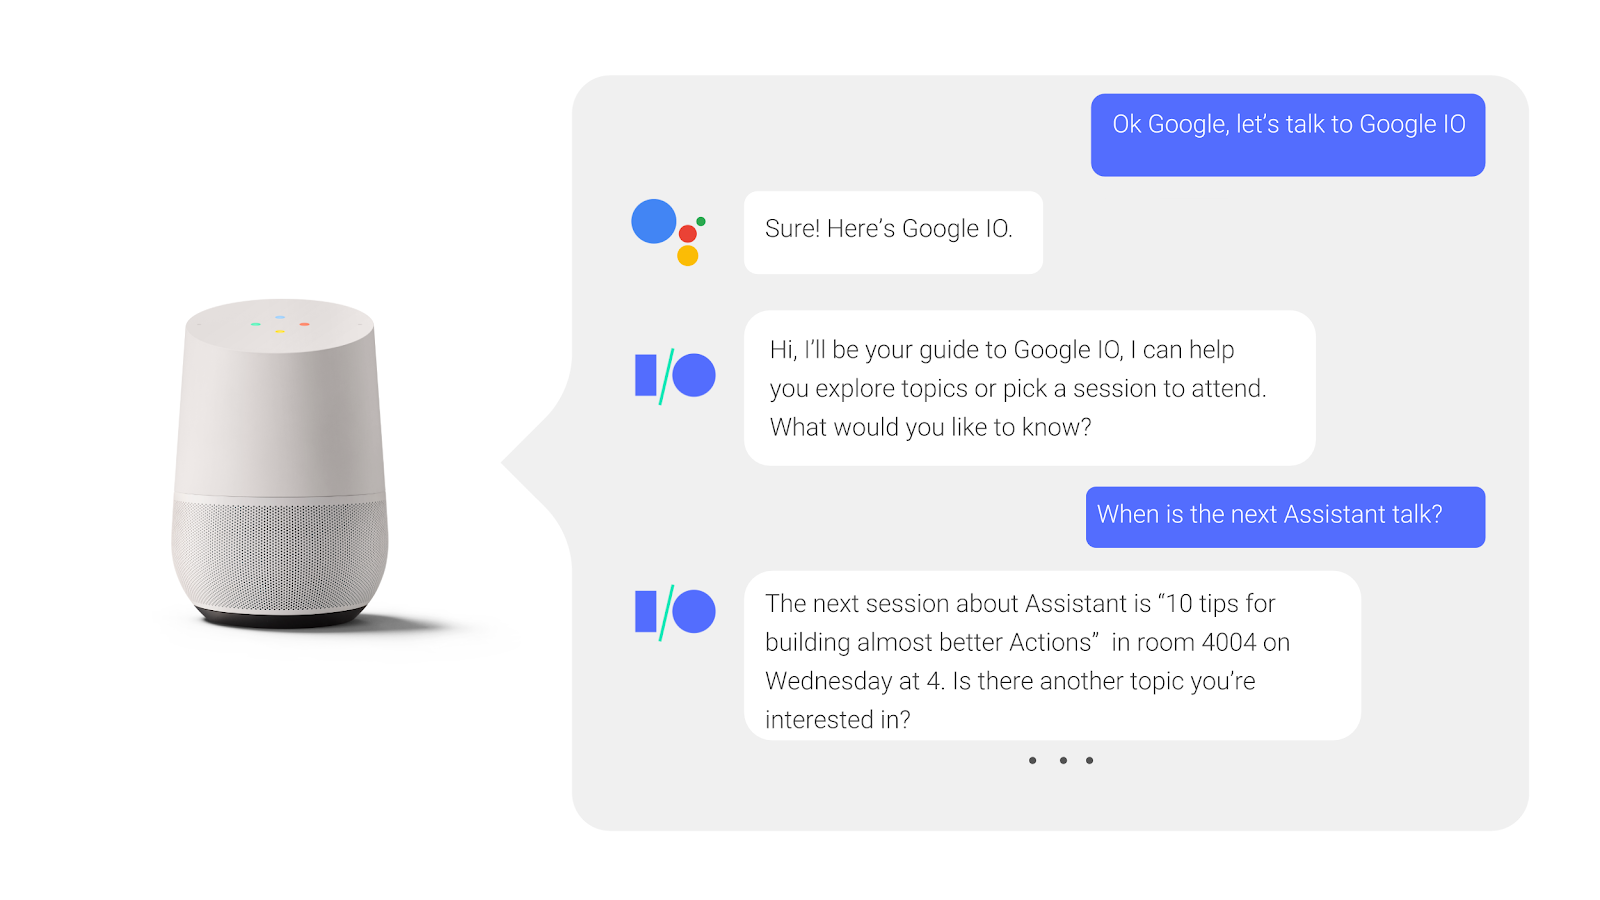 Dalam
    percakapan bolak-balik dengan Asisten Google, pengguna akan bertanya
    dan menerima jawaban saat sesi konferensi berlangsung.